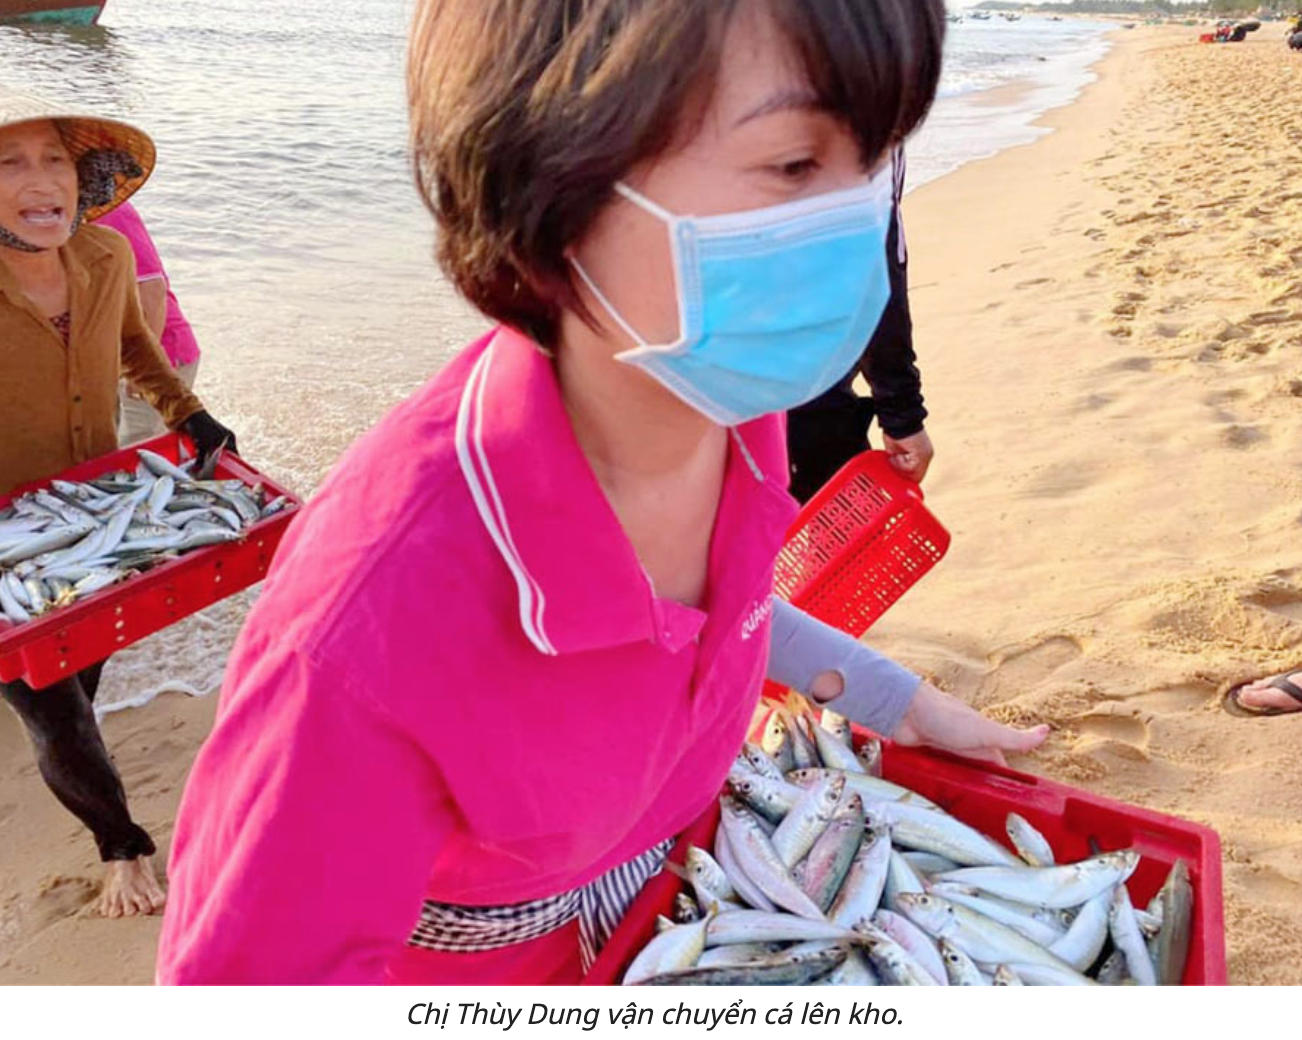 Thu mua cá ngay tại thuyền, rồi chuyển về sơ chế, sau đó đóng vào xe đông lạnh gửi đi TP. HCM (ảnh chụp màn hình trên báo VietNamNet).